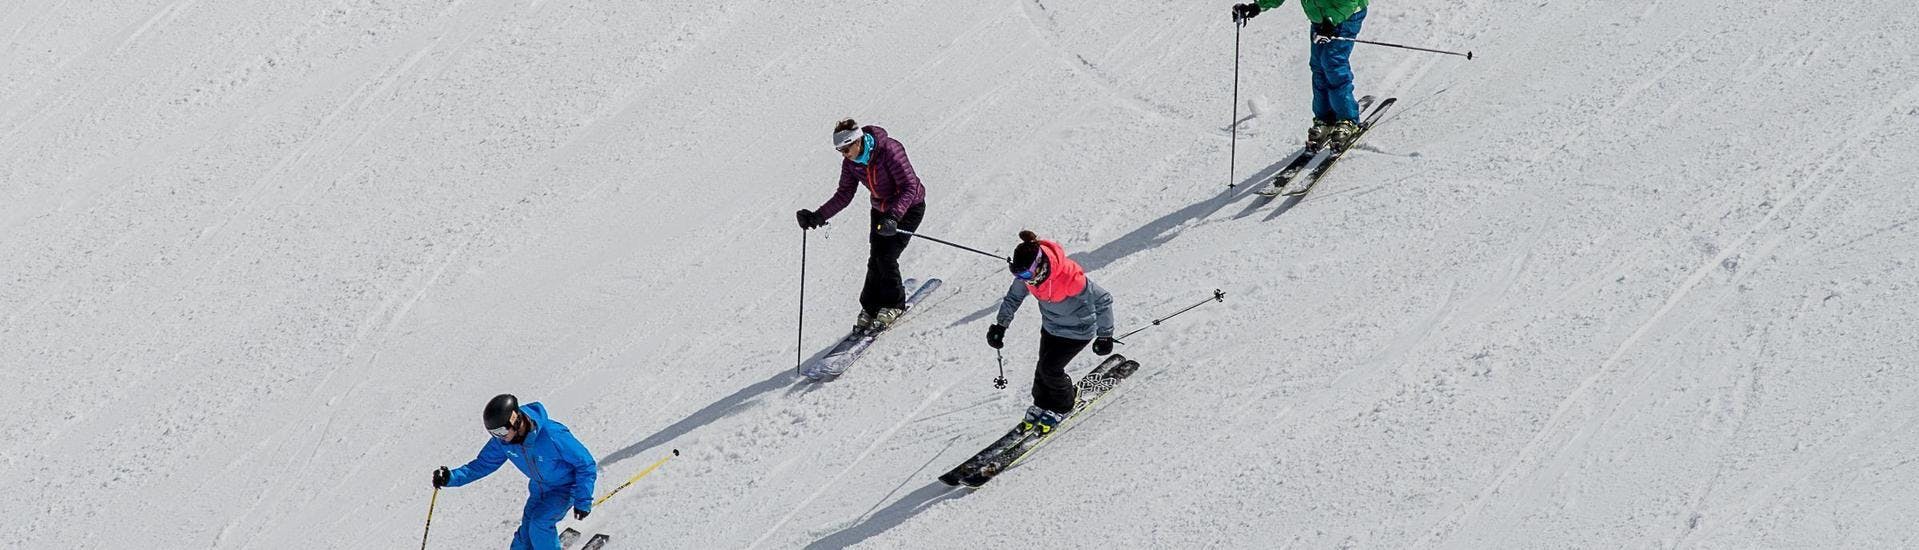 Privater Skikurs für Erwachsene.